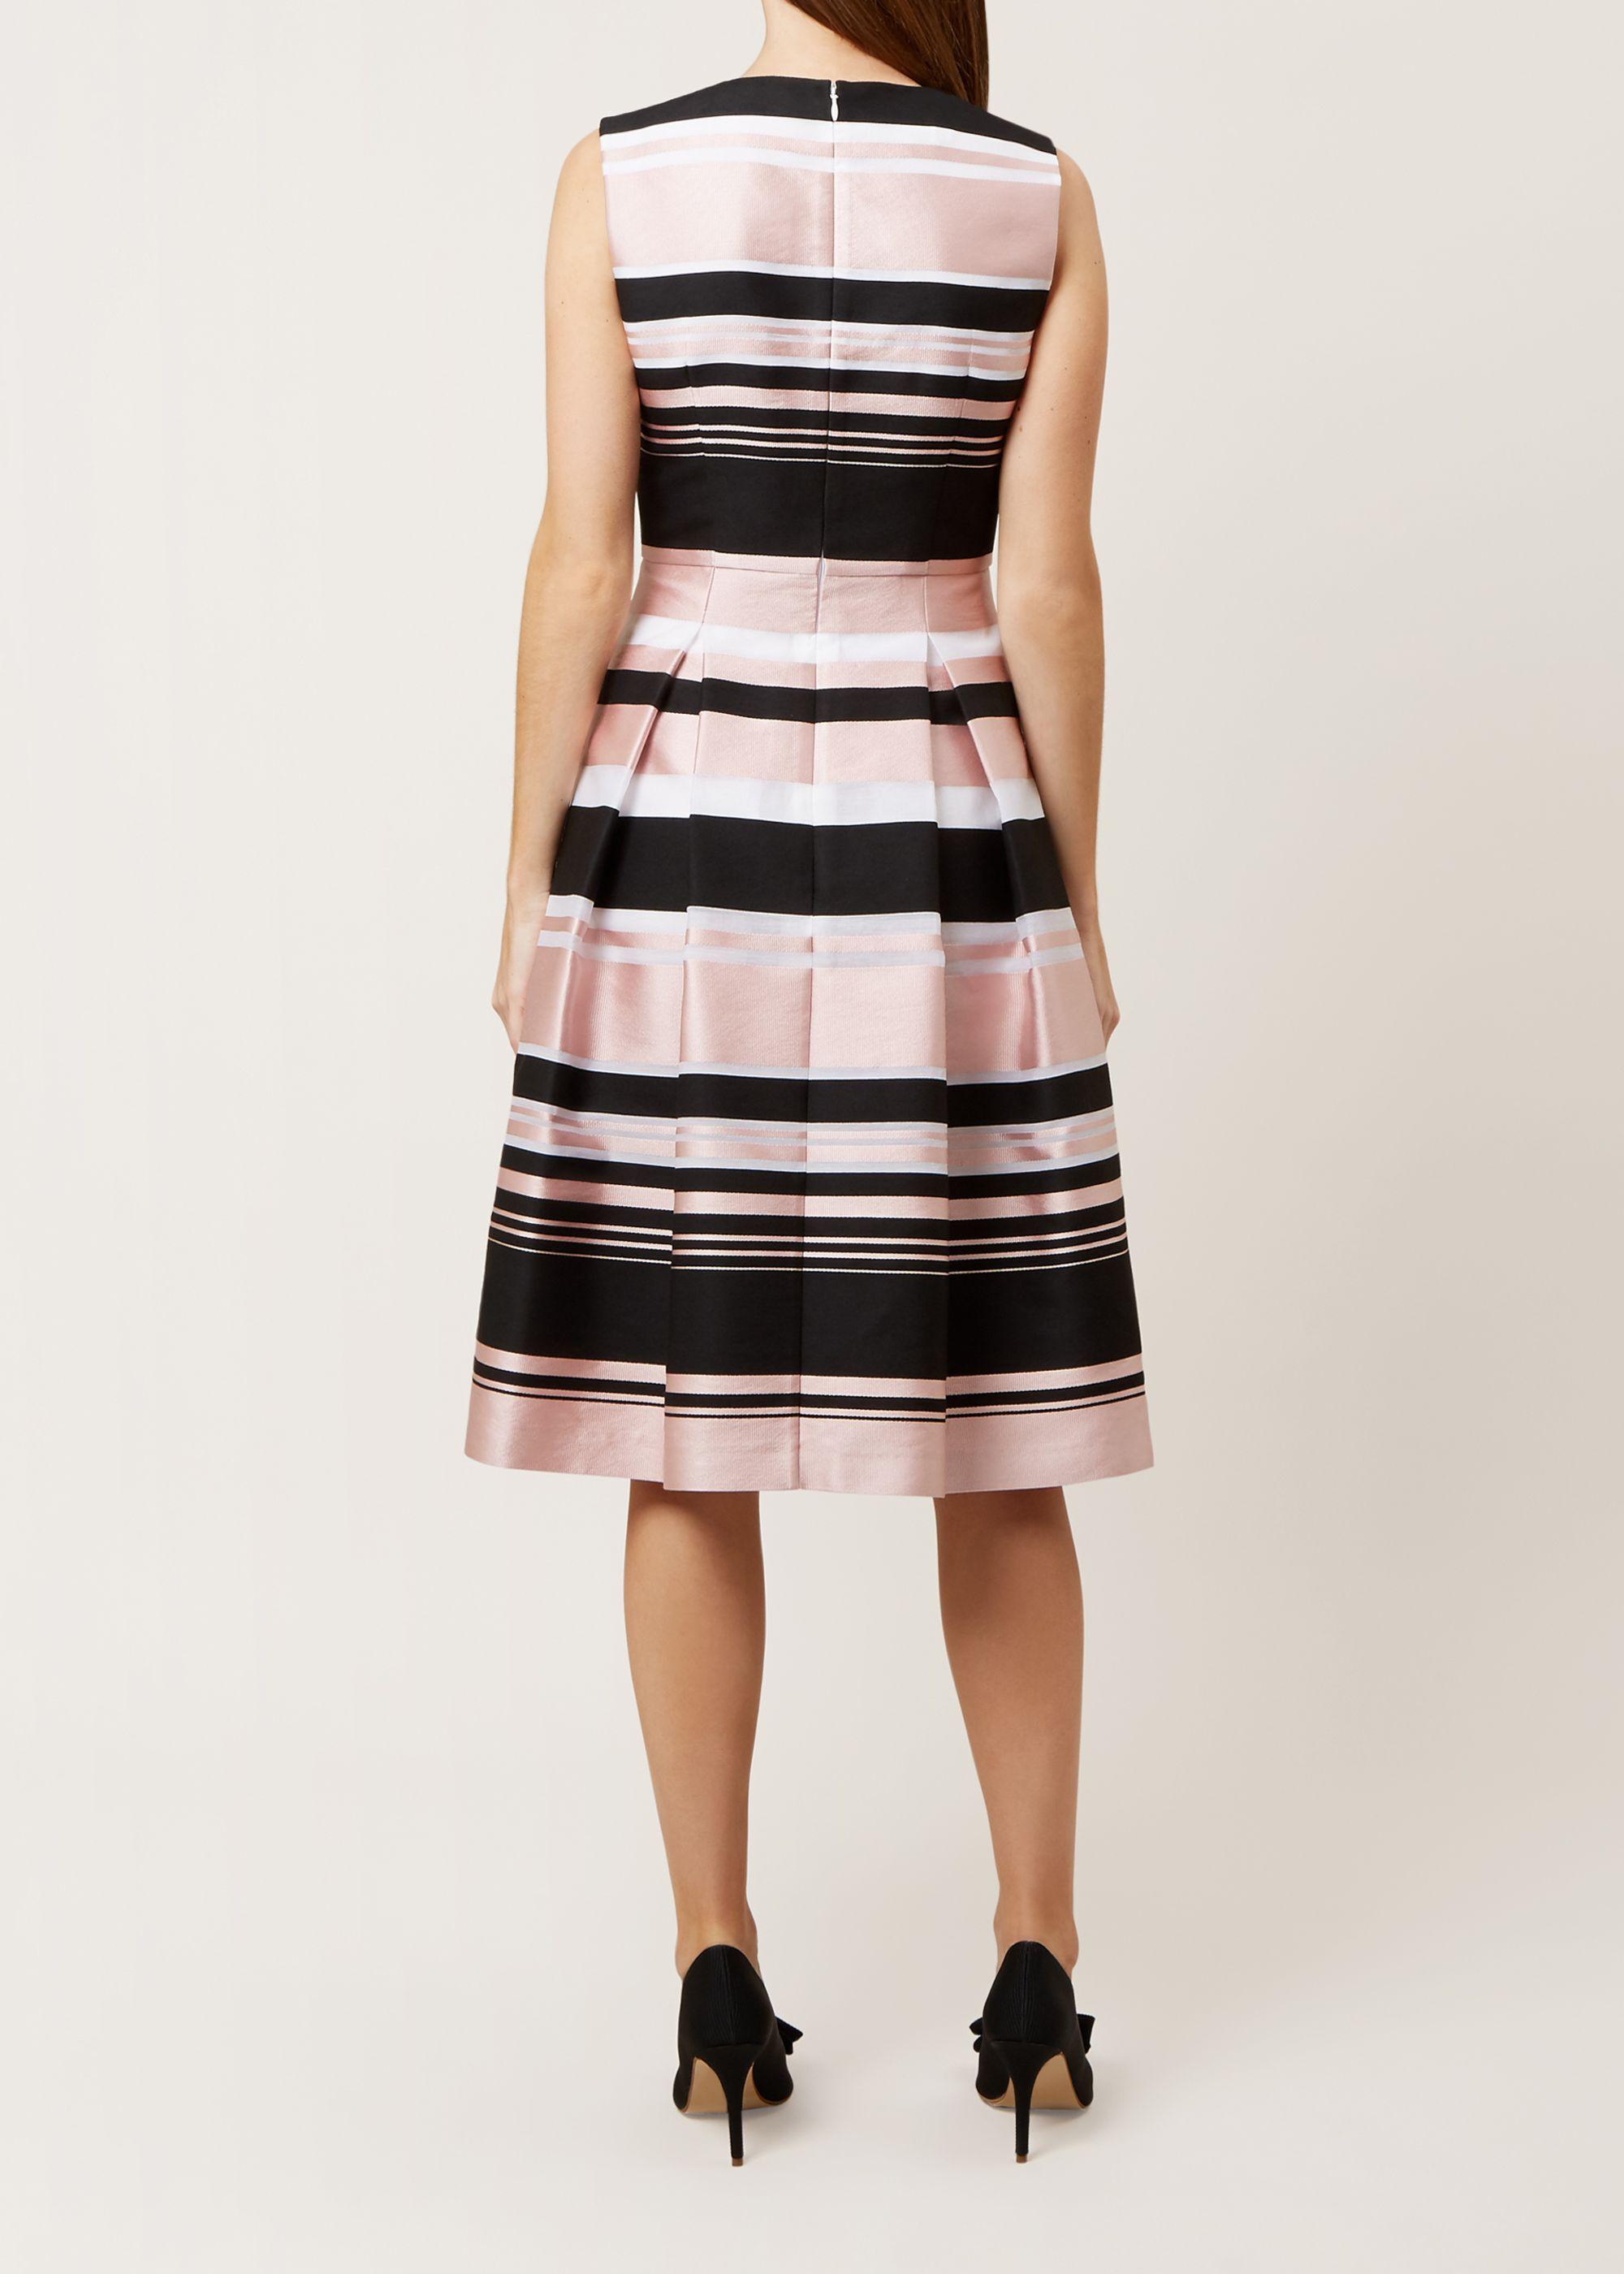 Hobbs Bridgette Stripe Dress in Black | Lyst UK